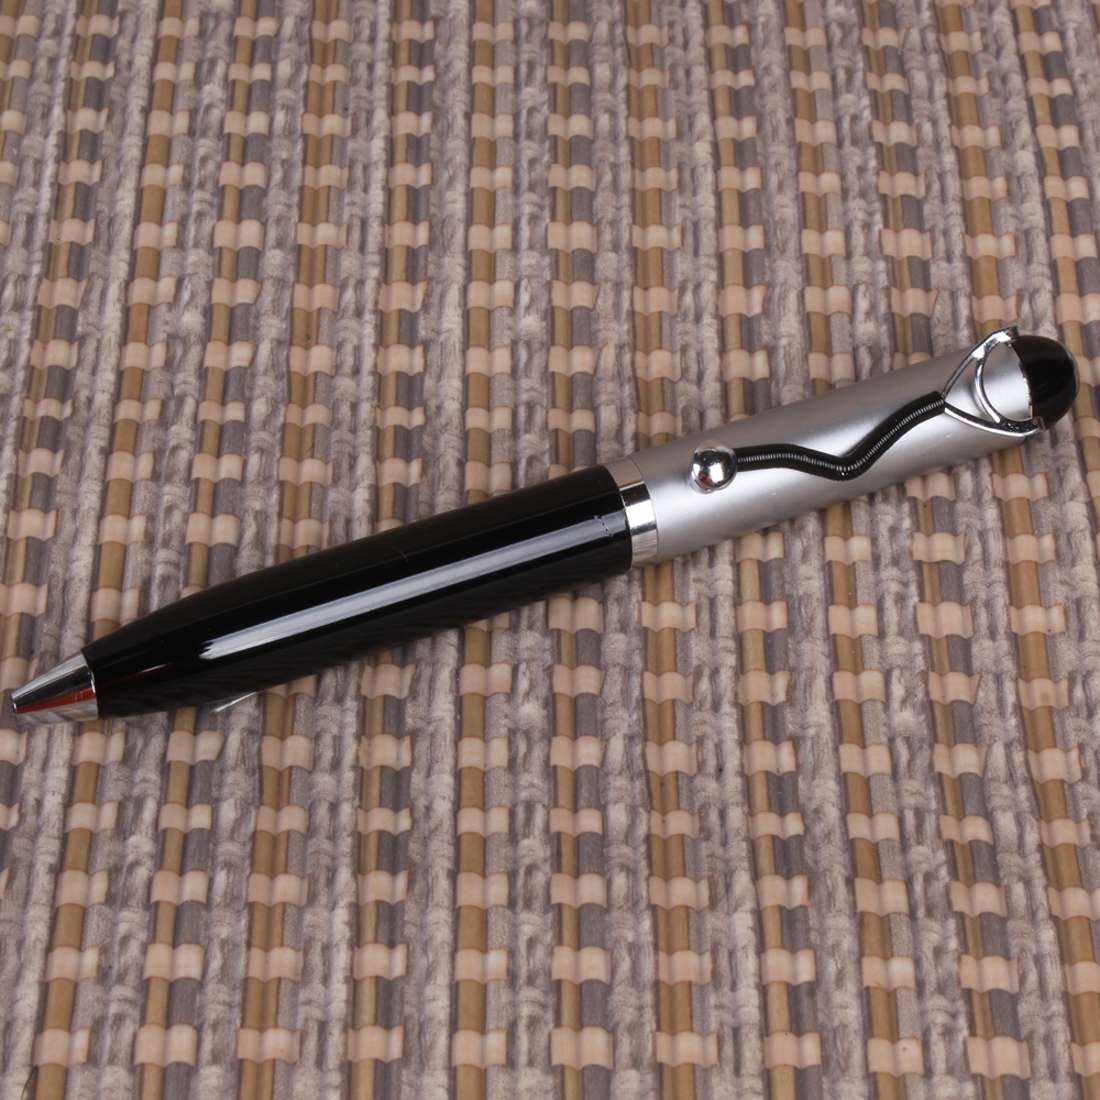 Black and Sliver Pen